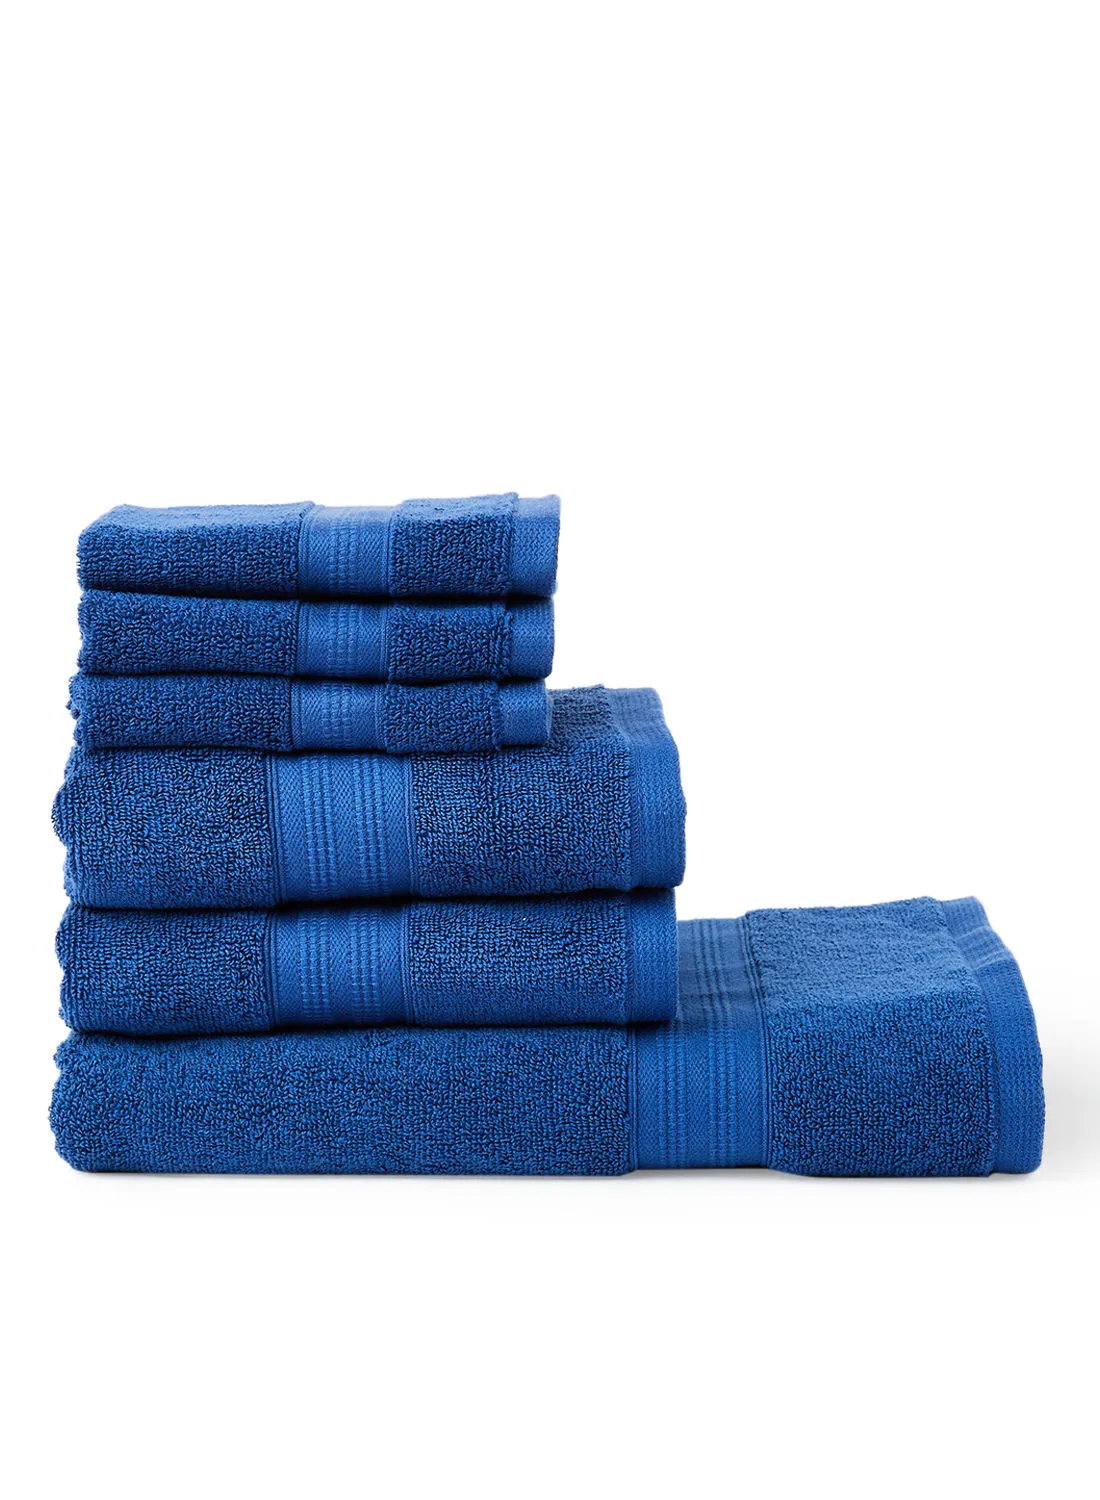 White Rose 6-Piece Cotton Set Bath Towel Blue 33x33, 50x90, 70x140cm